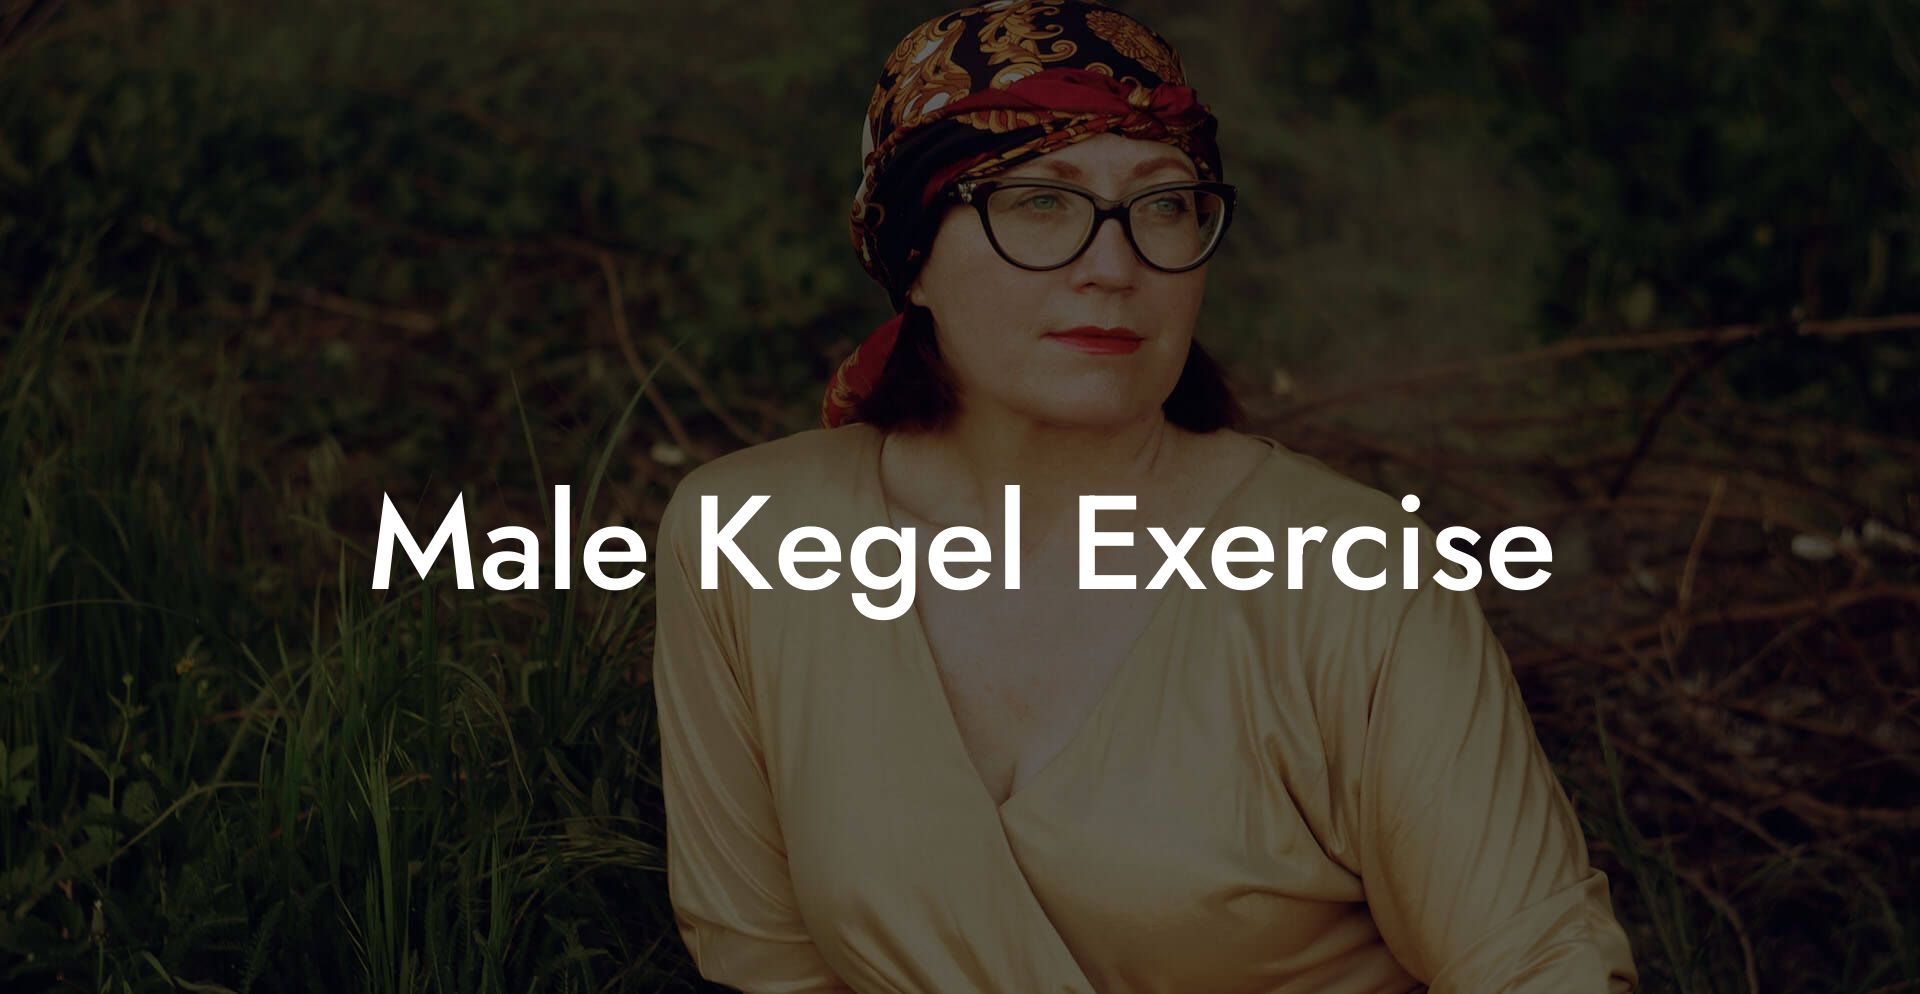 Male Kegel Exercise